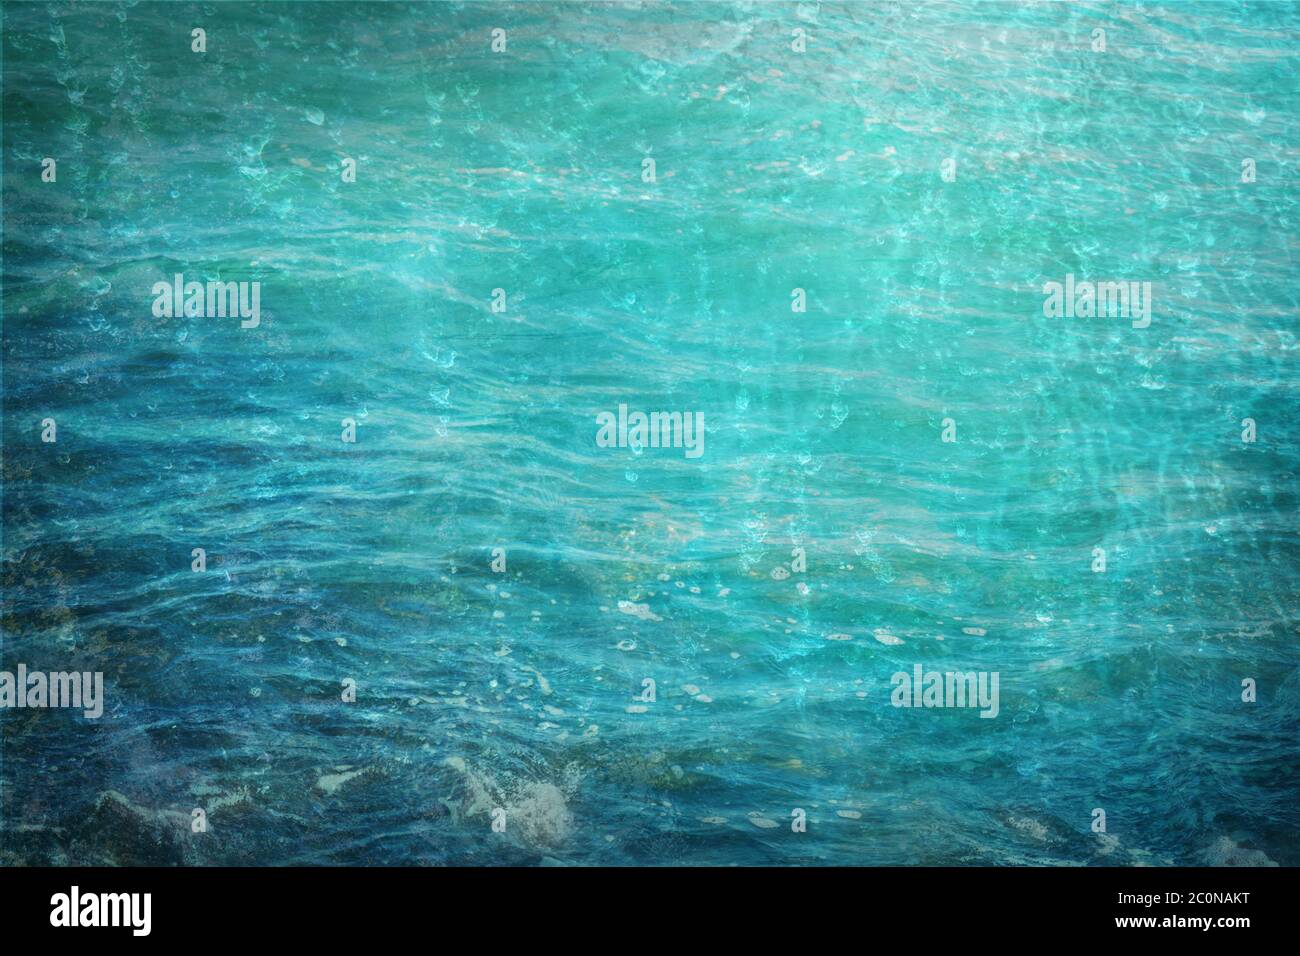 Nature élément eau, texture abstraite de fond en bleu et turquoise, pour des thèmes comme la mer, l'océan, la protection de l'environnement et le climat, l'espace de copie Banque D'Images